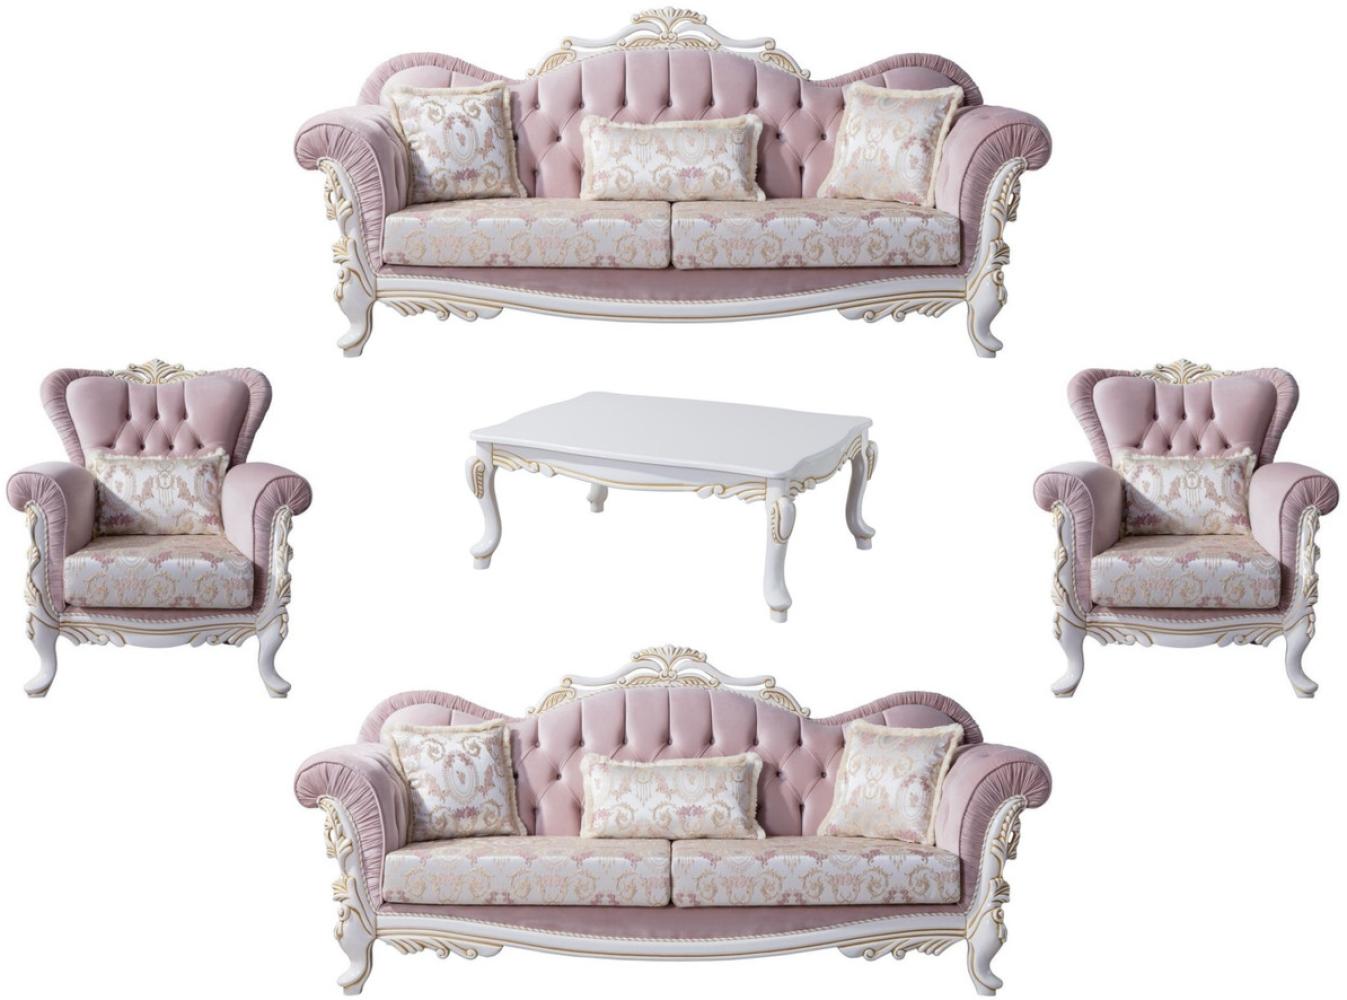 Casa Padrino Luxus Barock Wohnzimmer Set Rosa / Silber / Weiß / Gold - 2 Sofas & 2 Sessel & 1 Couchtisch - Edle Wohnzimmer Möbel im Barockstil Bild 1